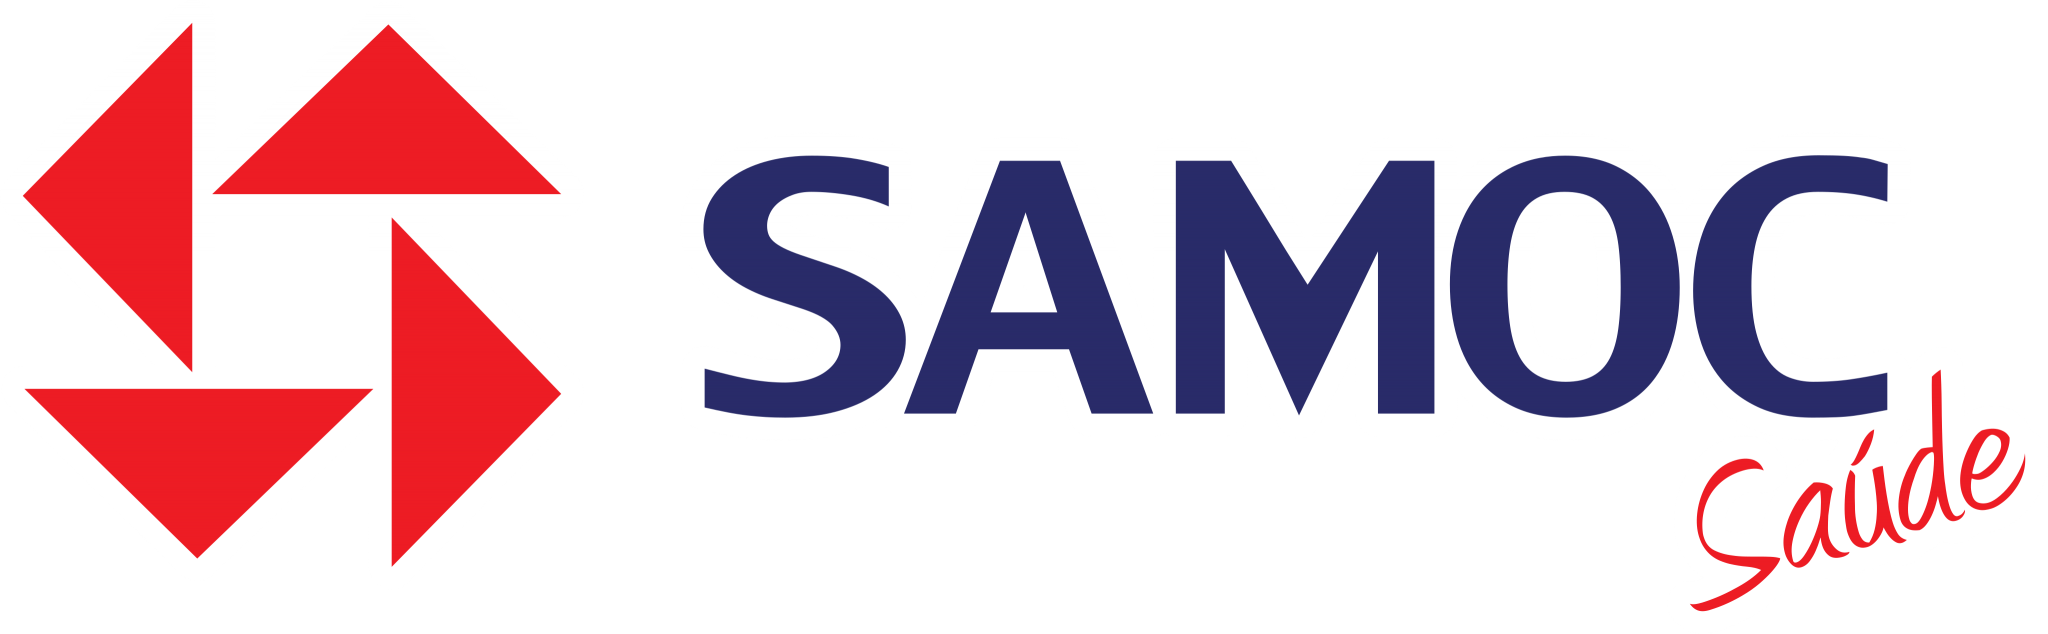 samoc-saude-logo